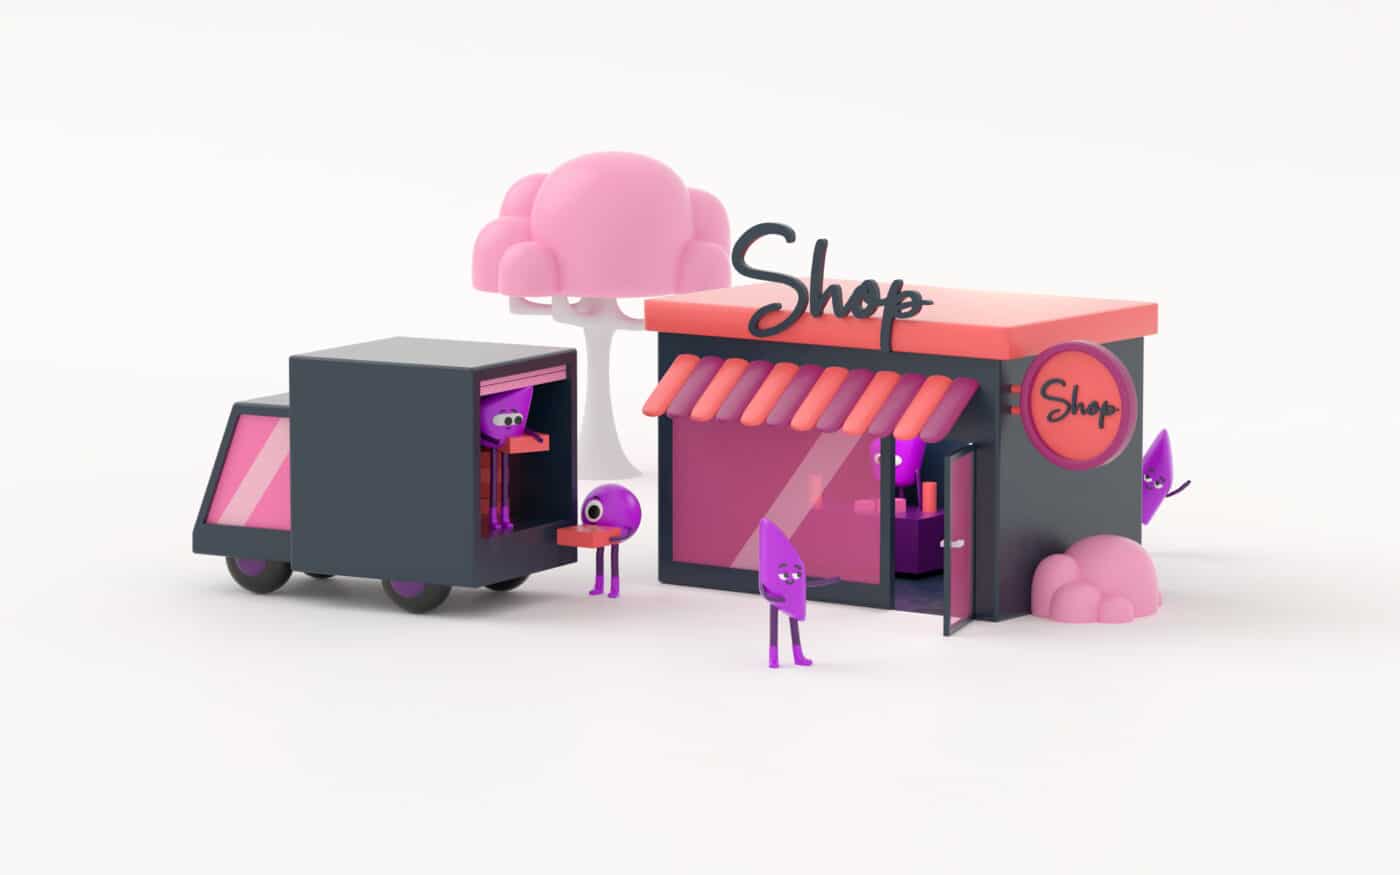 Des petits personnages 3D livrent une boutique depuis un camion